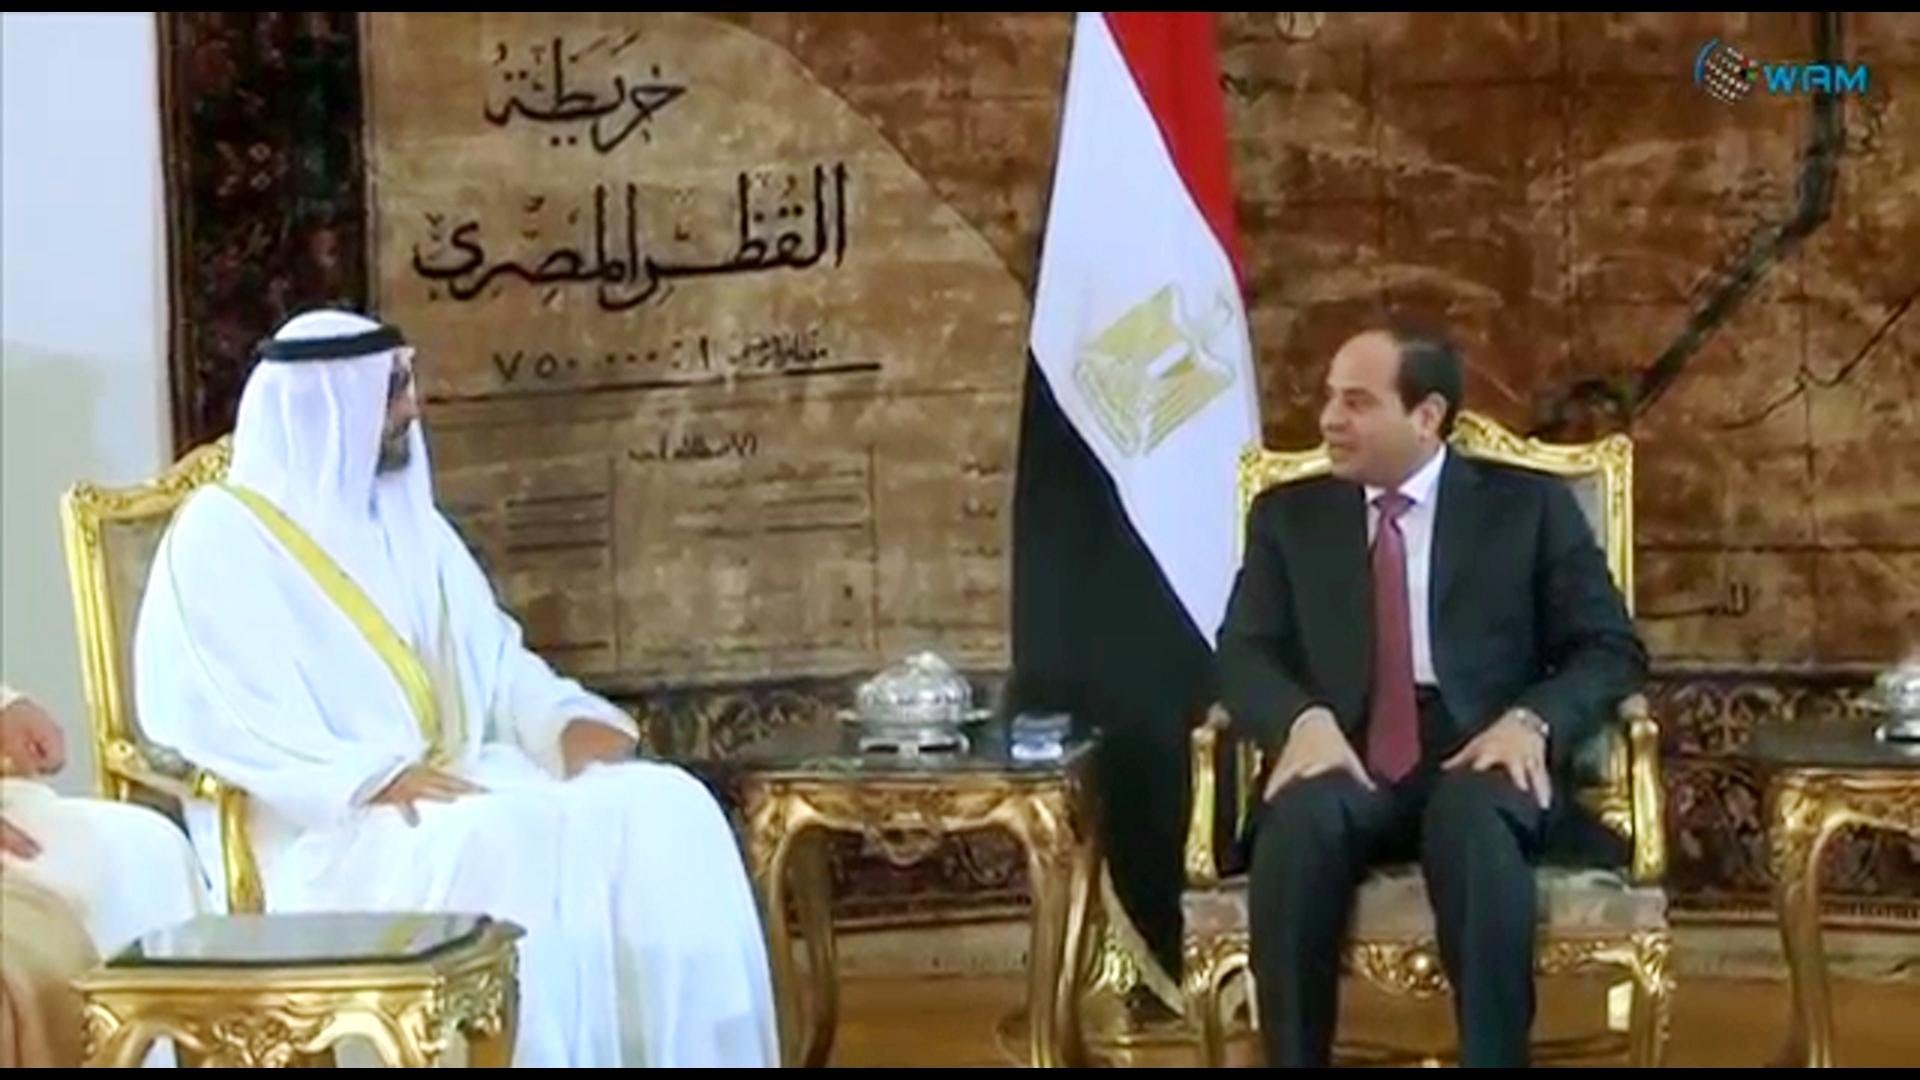   الرئيس السيسى يتبادل تهنئة العيد مع الشيخ محمد بن زايد